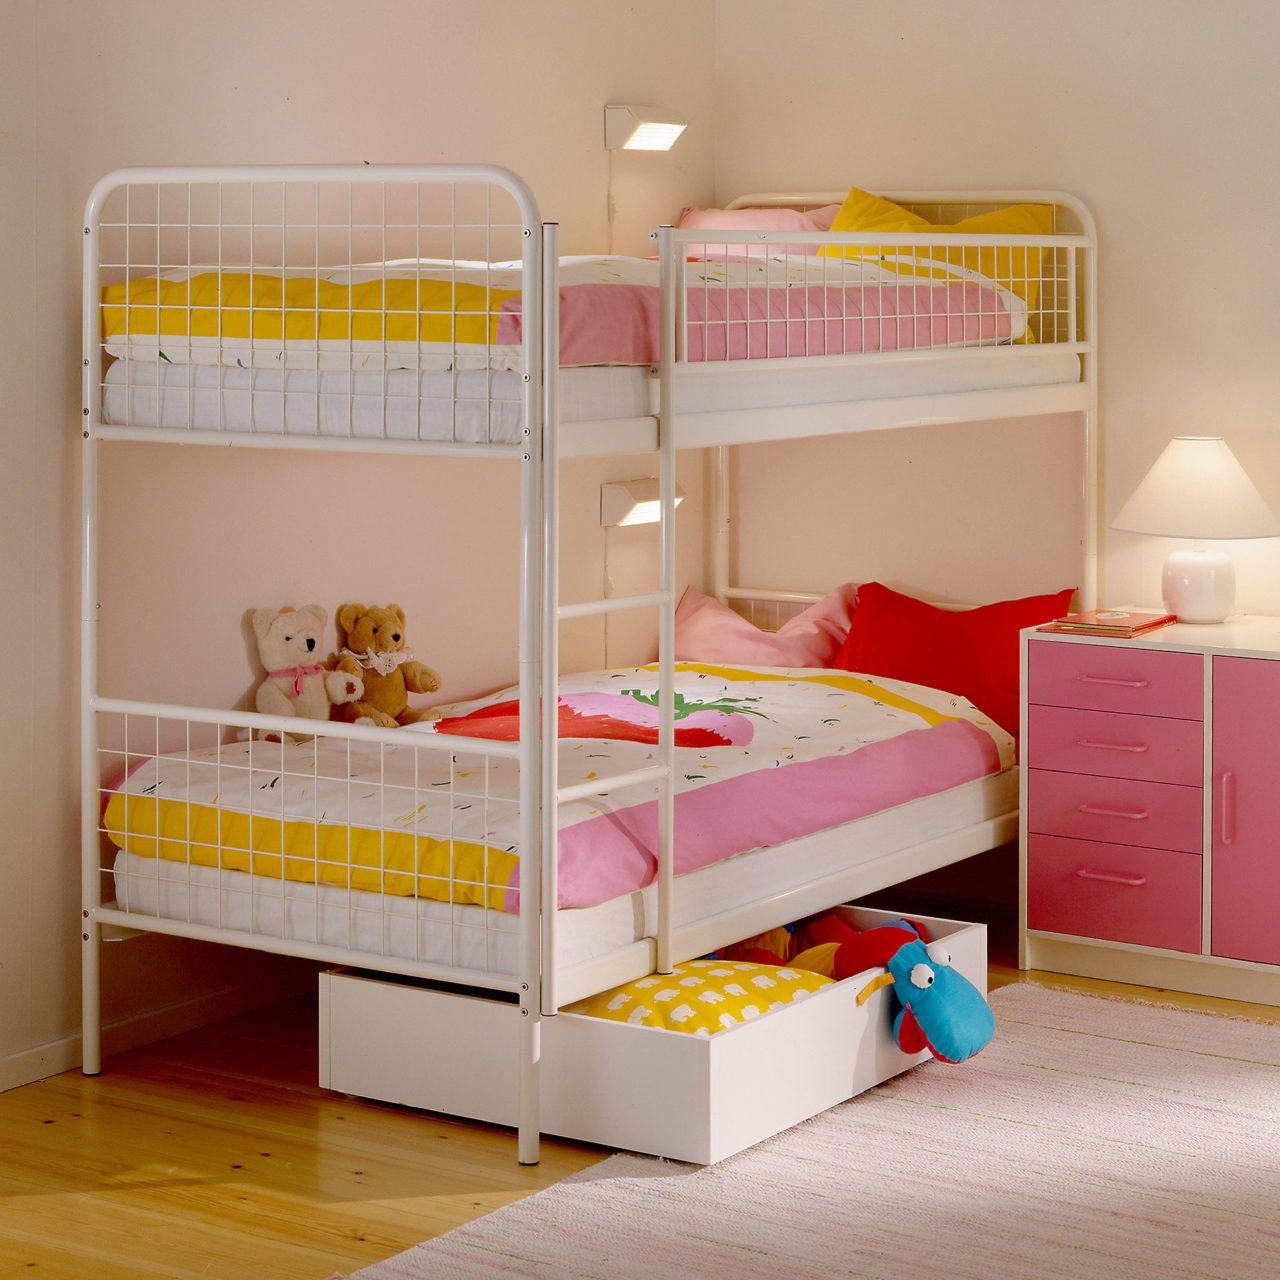 Kinderzimmer mit ordentlich gemachtem MALM Etagenbett. Weitere Möbel und Details in Rosa, Gelb und Weiß.